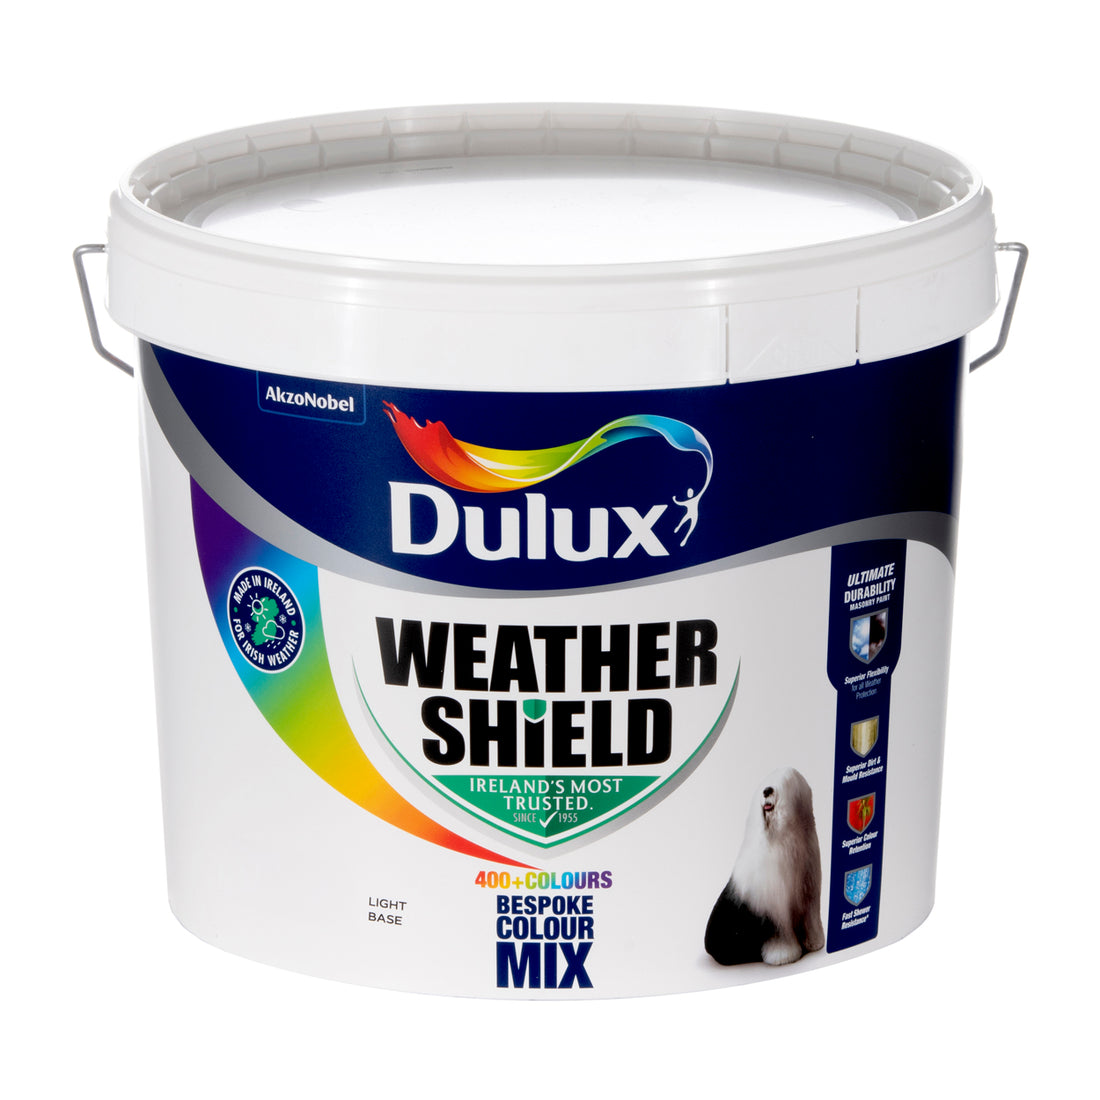 Dulux Trade Weathershield Light Base 10L